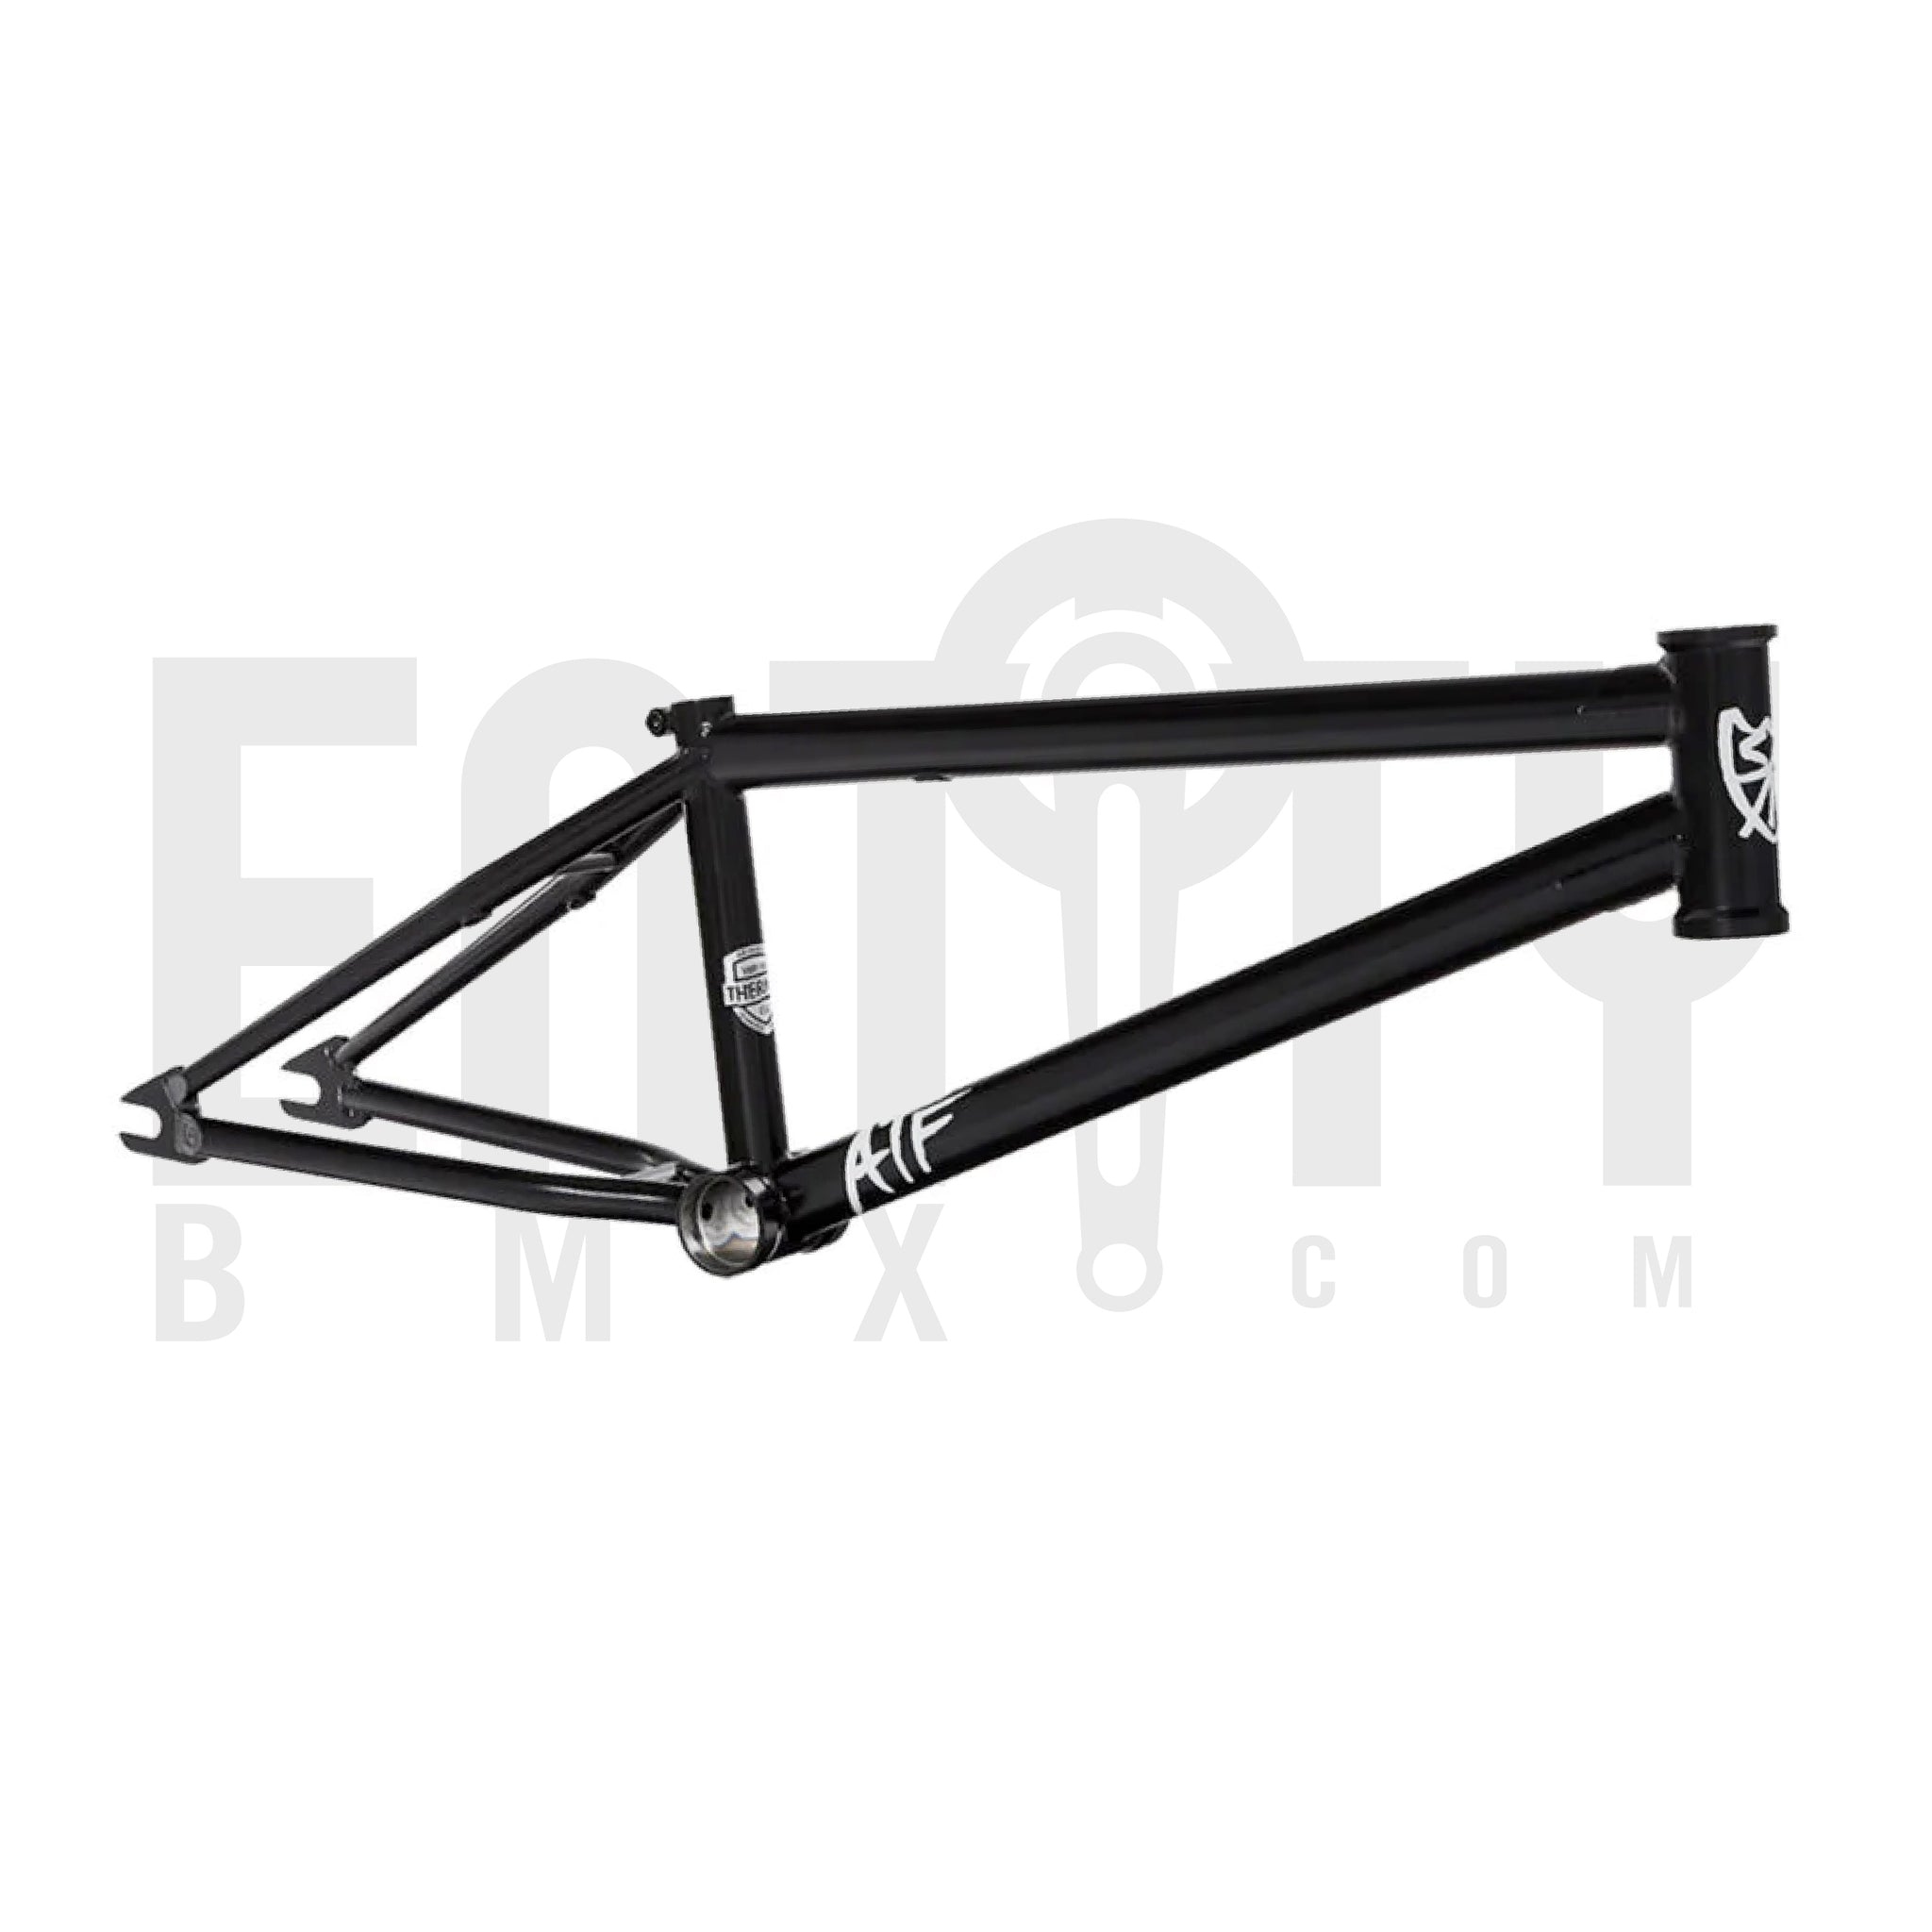 S&M Bikes 18" ATF Frame / Black